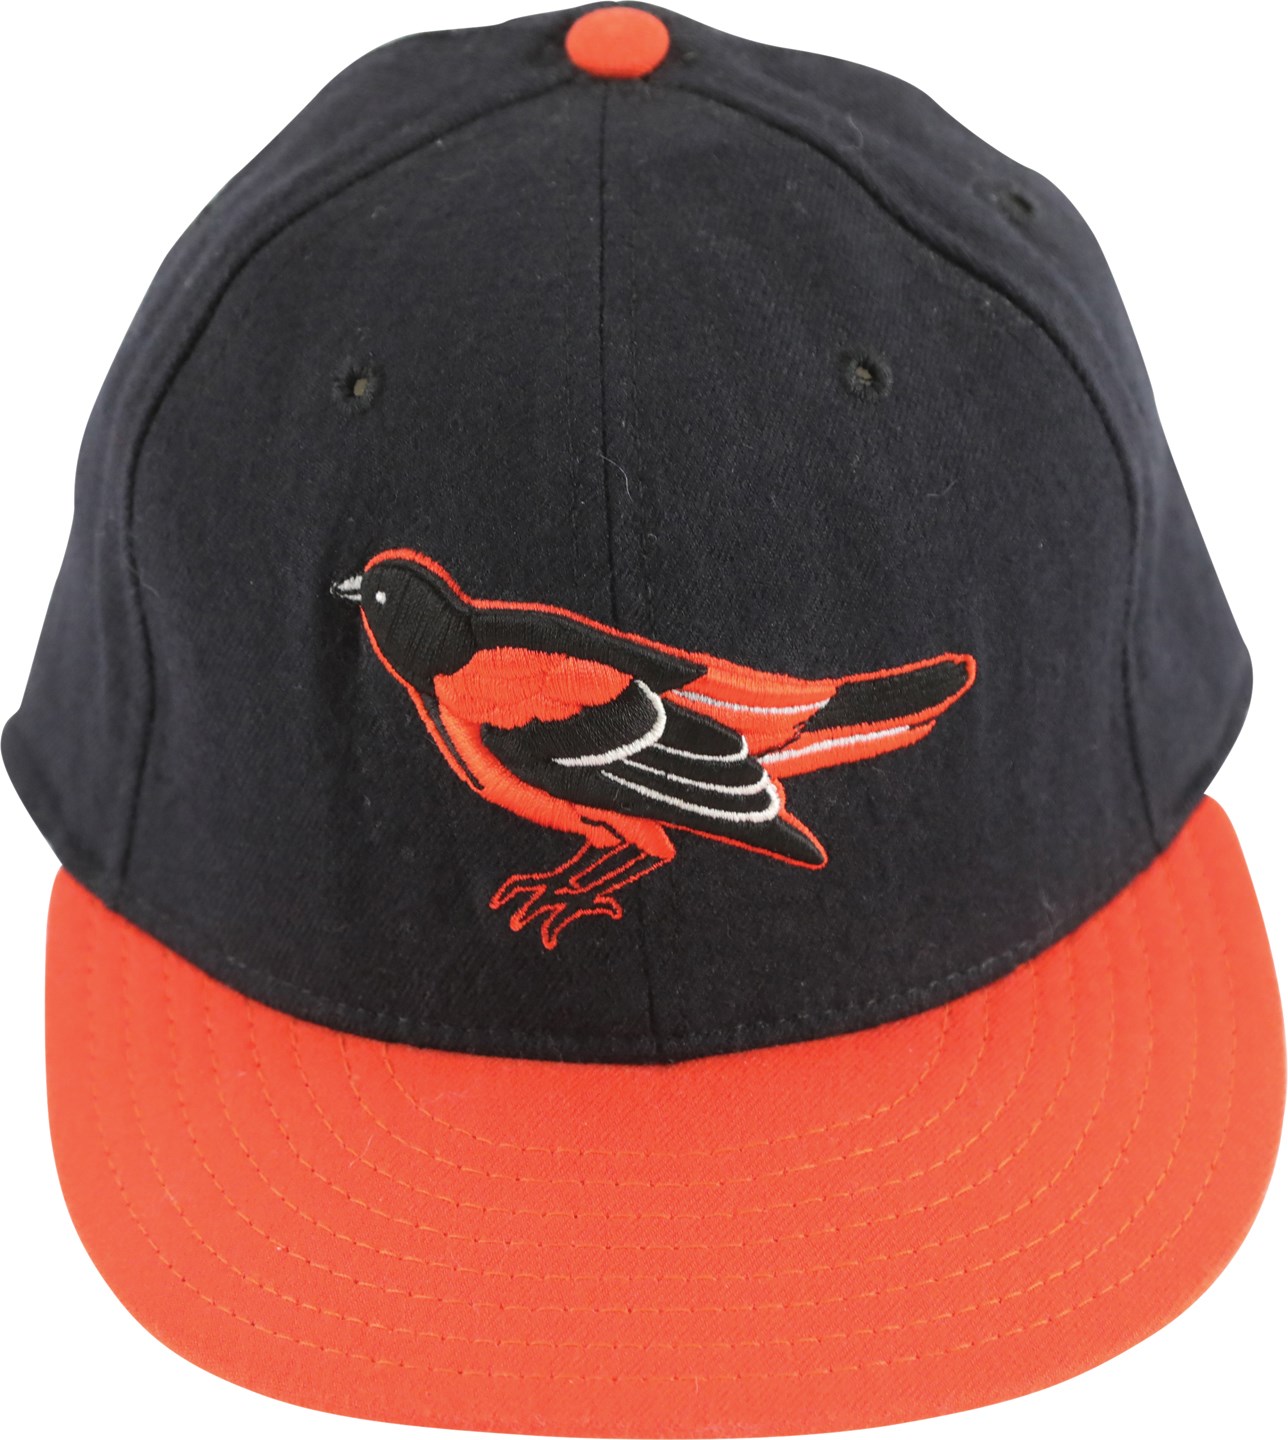 - Circa 1995 Rafael Palmeiro Game Used Baltimore Orioles Hat